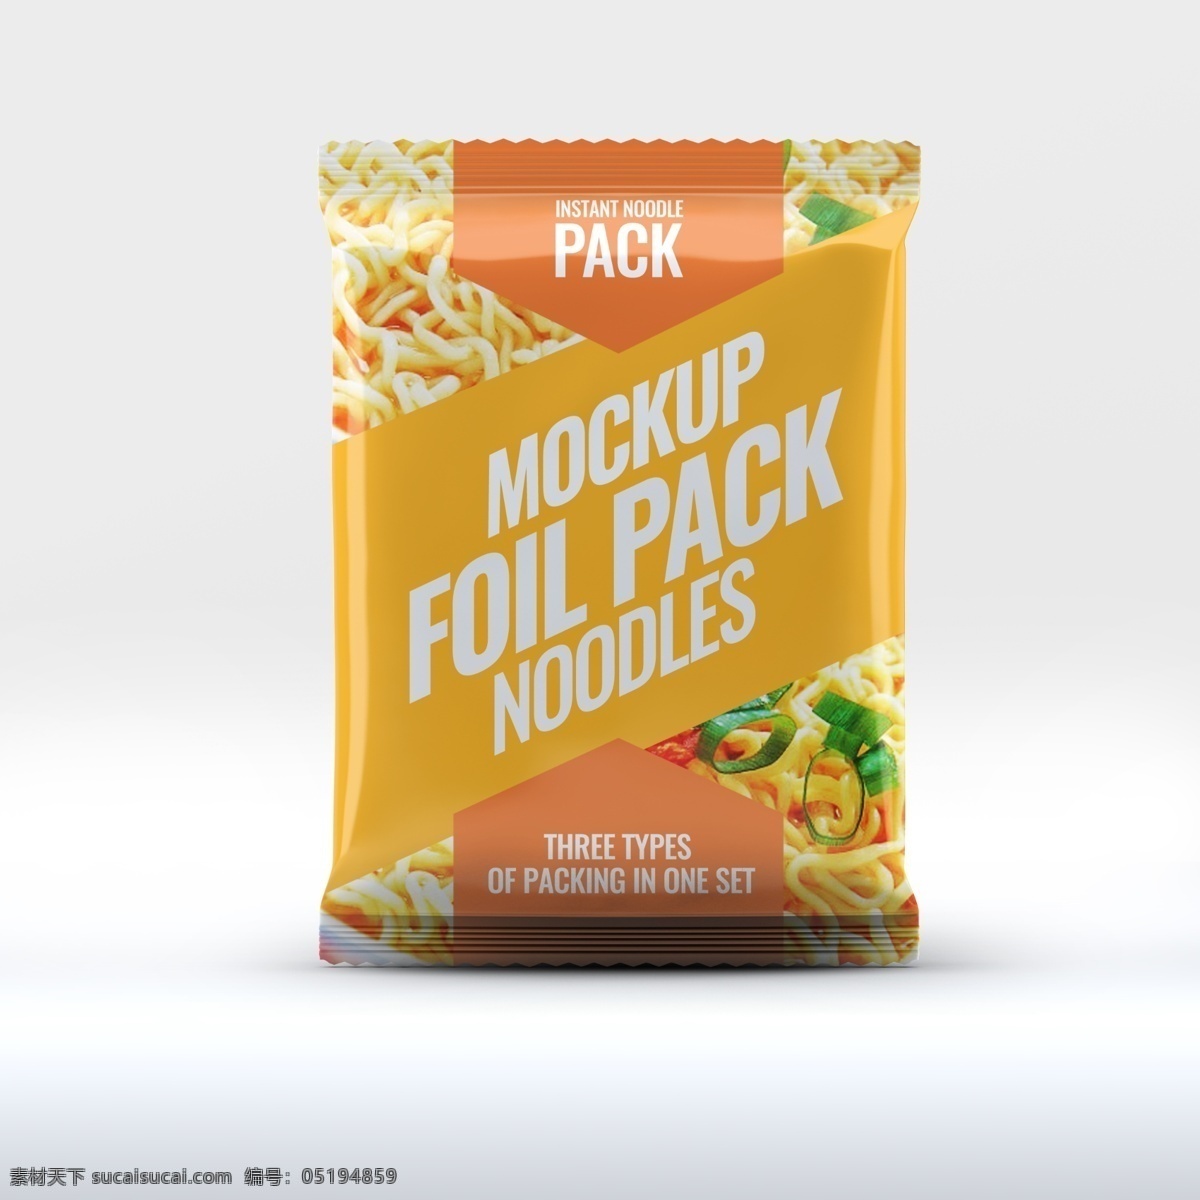 食物 袋 样机 模板 食物包装 密封袋 袋子 塑料袋 样机模板 包装样机